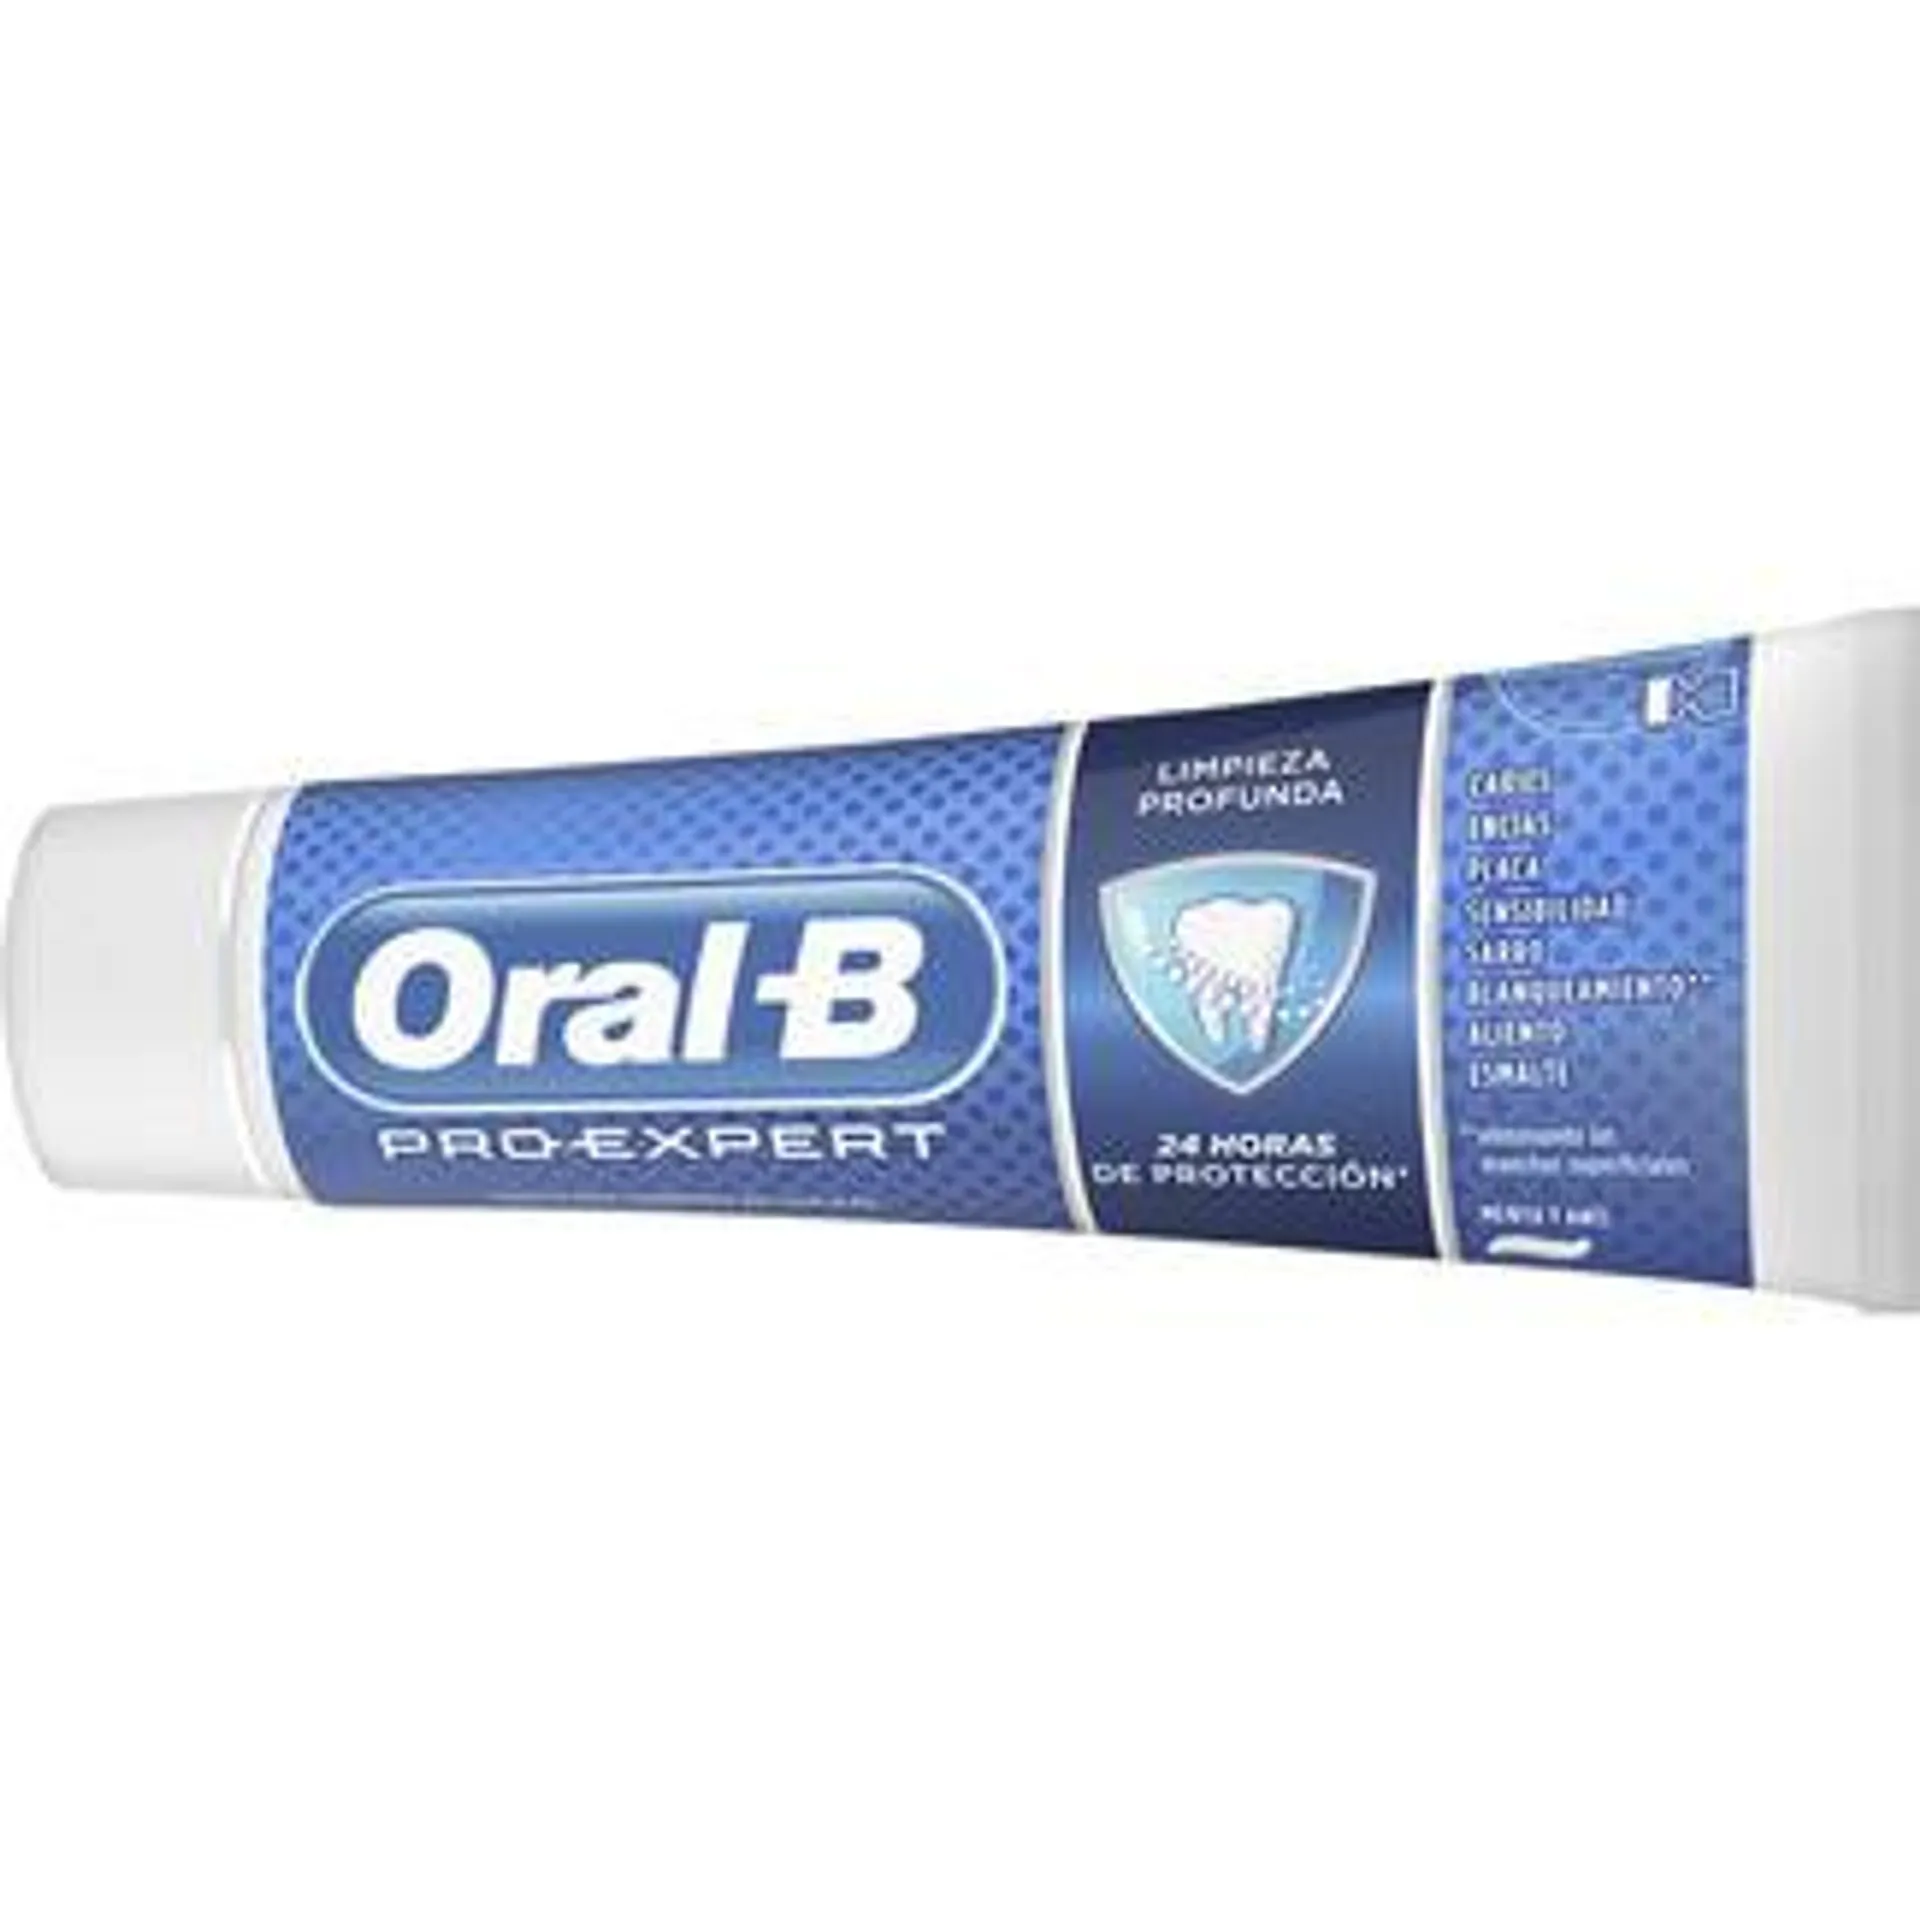 ORAL B pasta de dientes Pro-Expert Limpieza Profunda sabor menta y anís tubo 75 ml